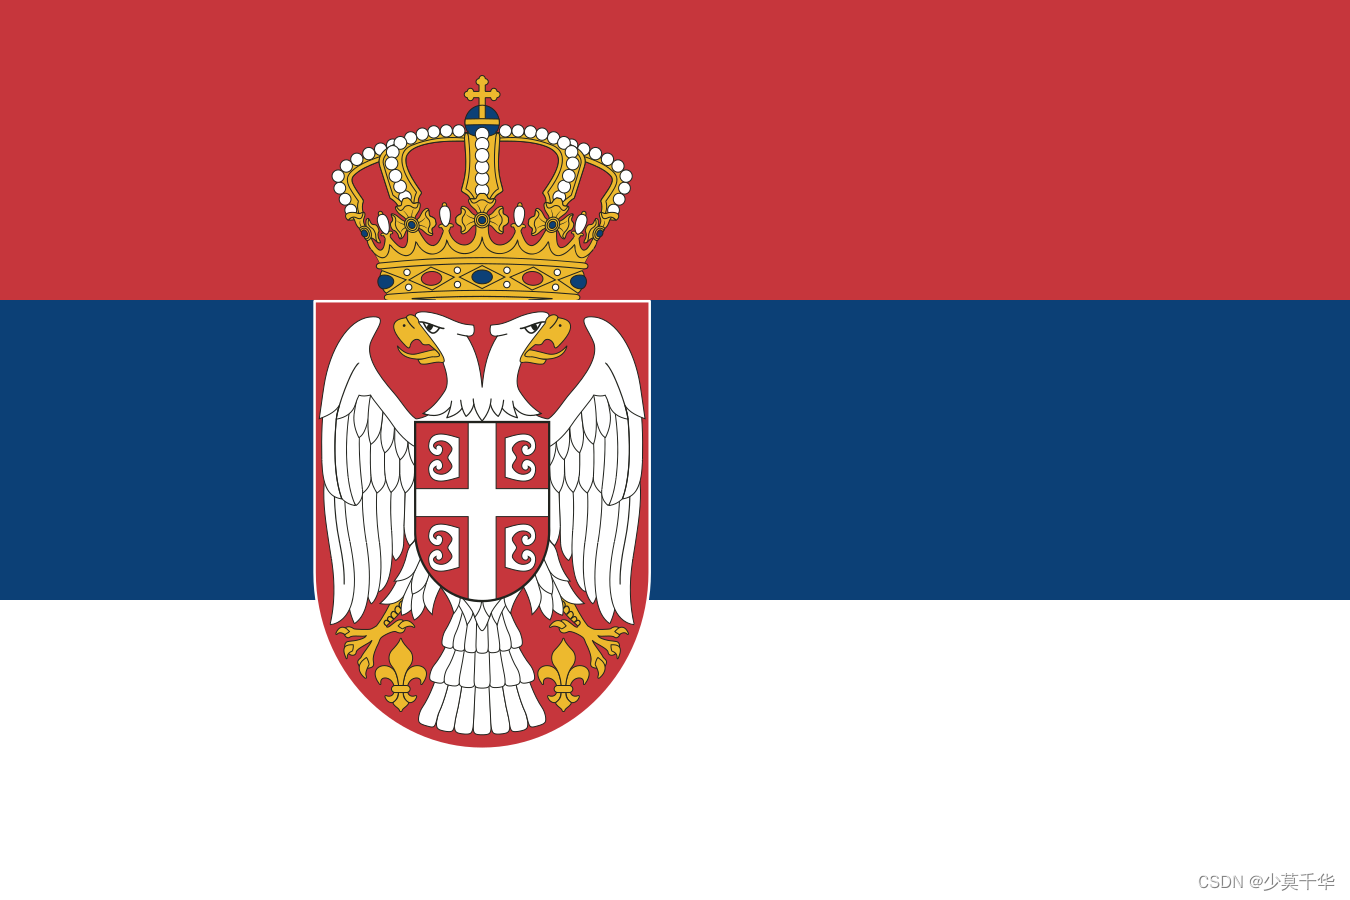 189.塞尔维亚-塞尔维亚共和国